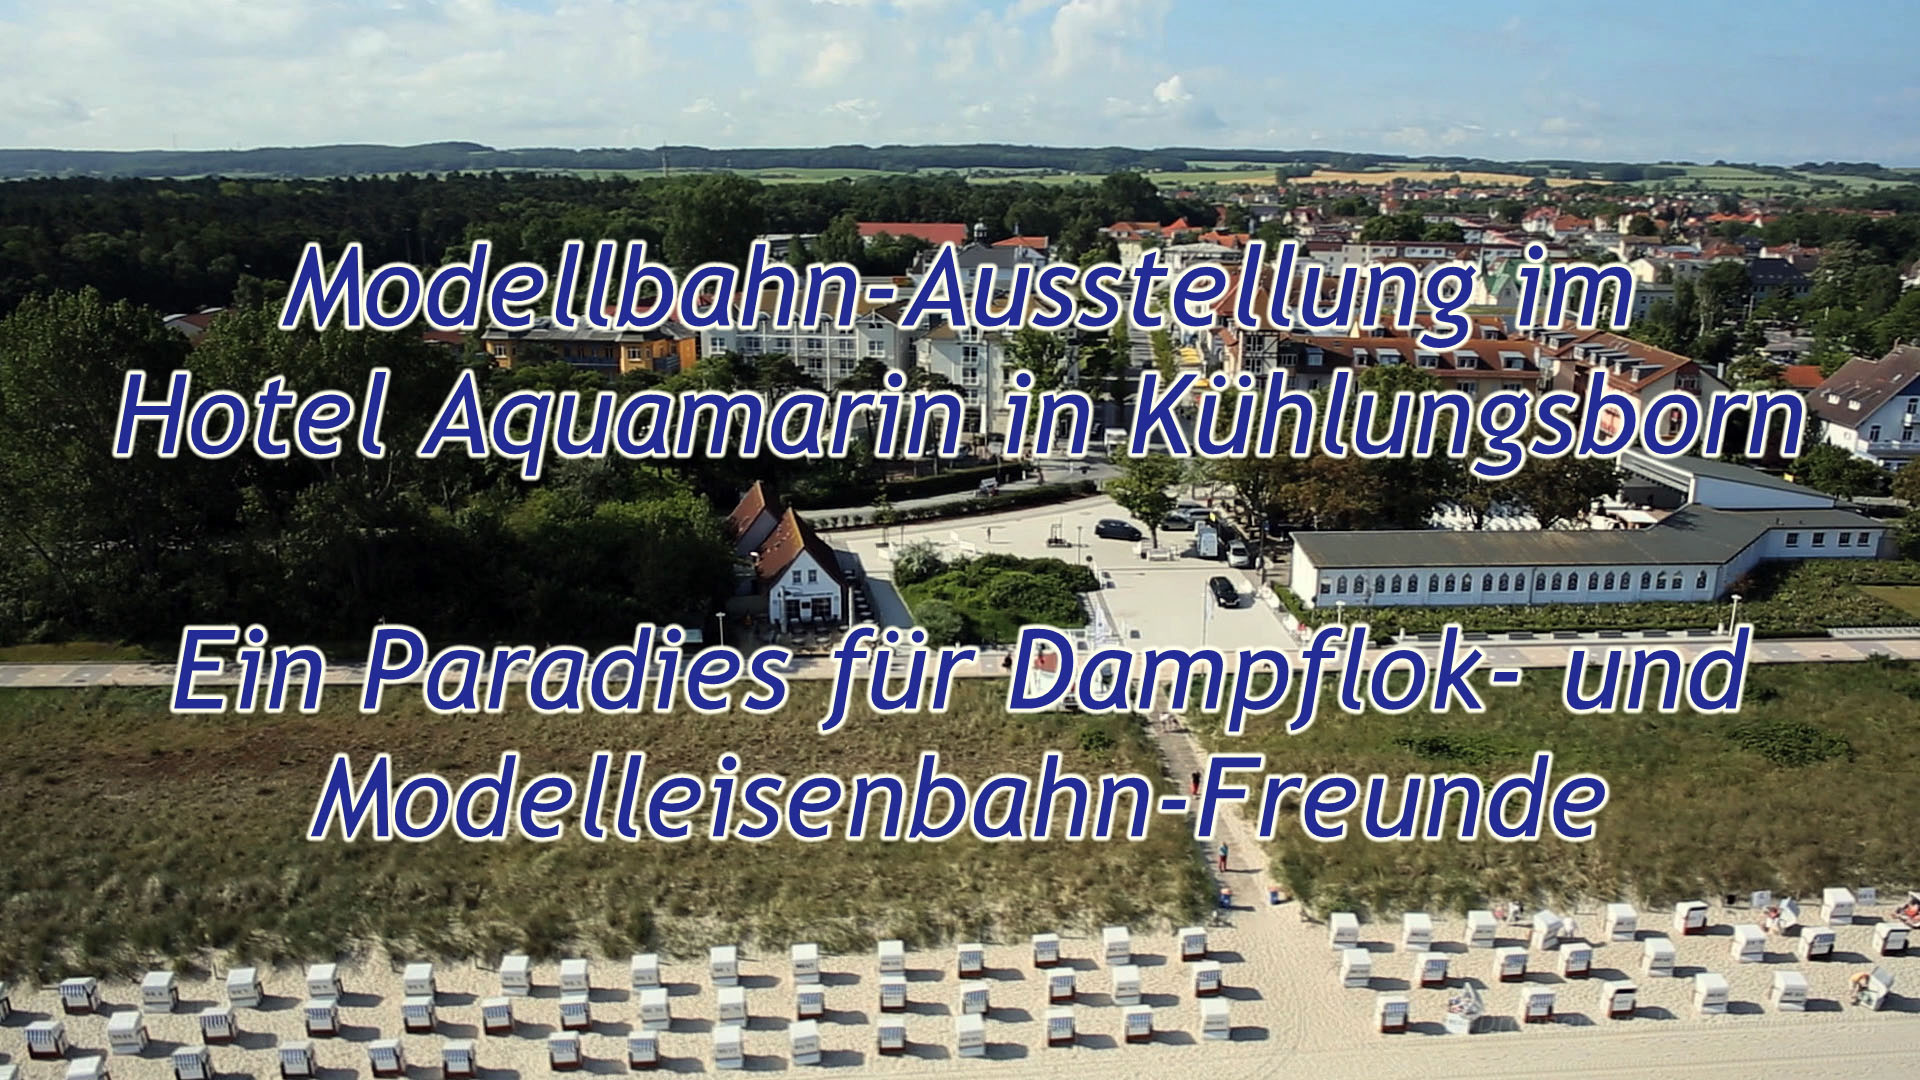 Ein Paradies für Dampflok- und Modelleisenbahn-Freunde: Modellbahn-Ausstellung im Hotel Aquamarin in Kühlungsborn